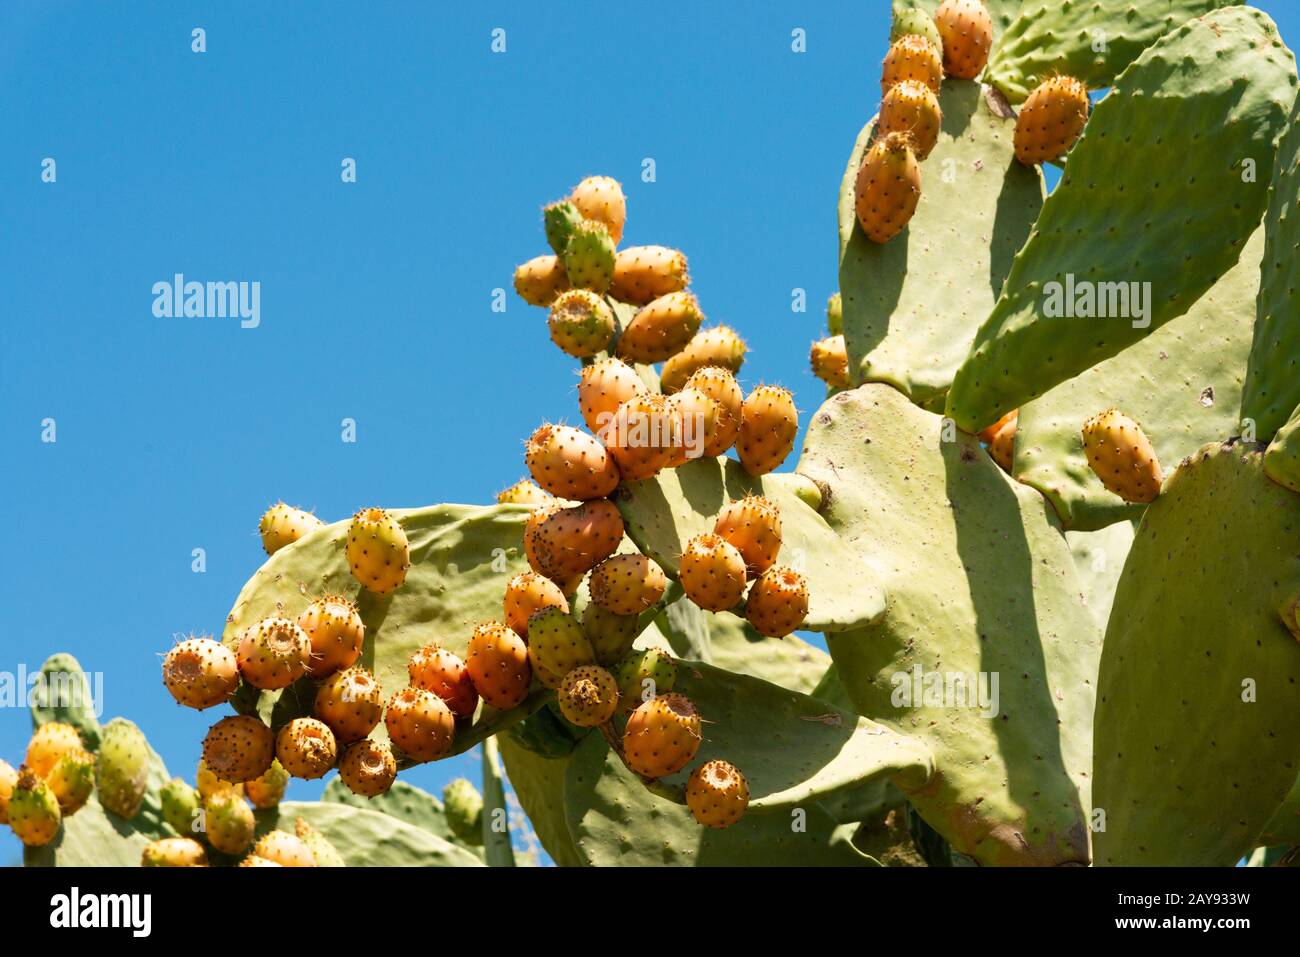 Stachelige Birnpflanze mit gereifter Kakteen-Feigenfrucht. Opuntia oder FICUS-indica Kakteenpflanze mit pharmazeutischen antioxidativen Eigenschaften essbare Früchte. Stockfoto